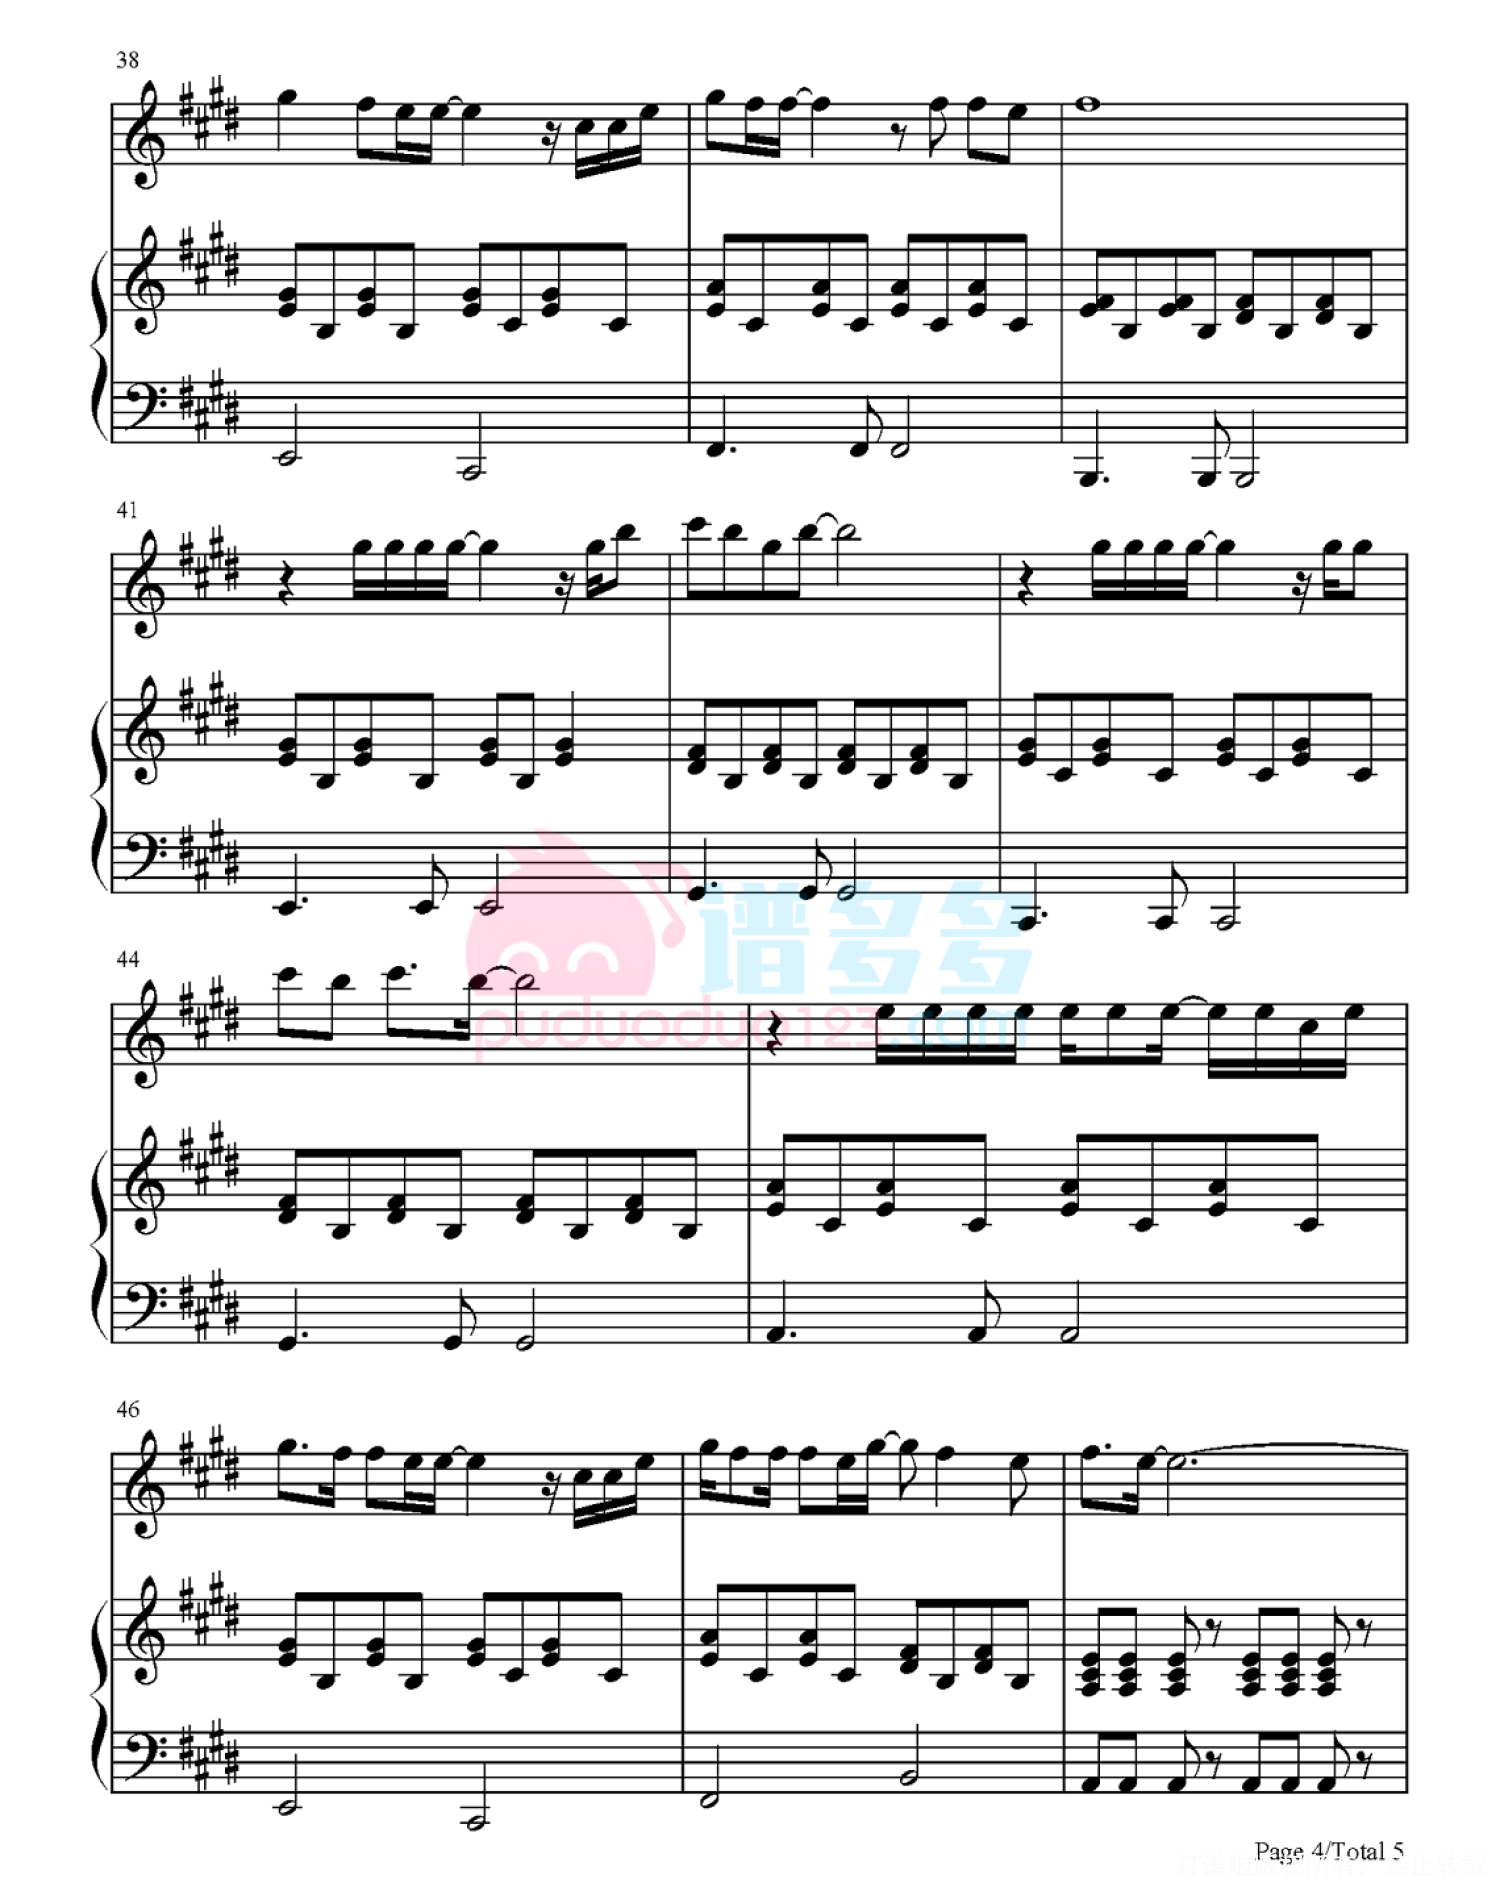 给所有知道我名字的人-弹唱版五线谱预览2-钢琴谱文件（五线谱、双手简谱、数字谱、Midi、PDF）免费下载